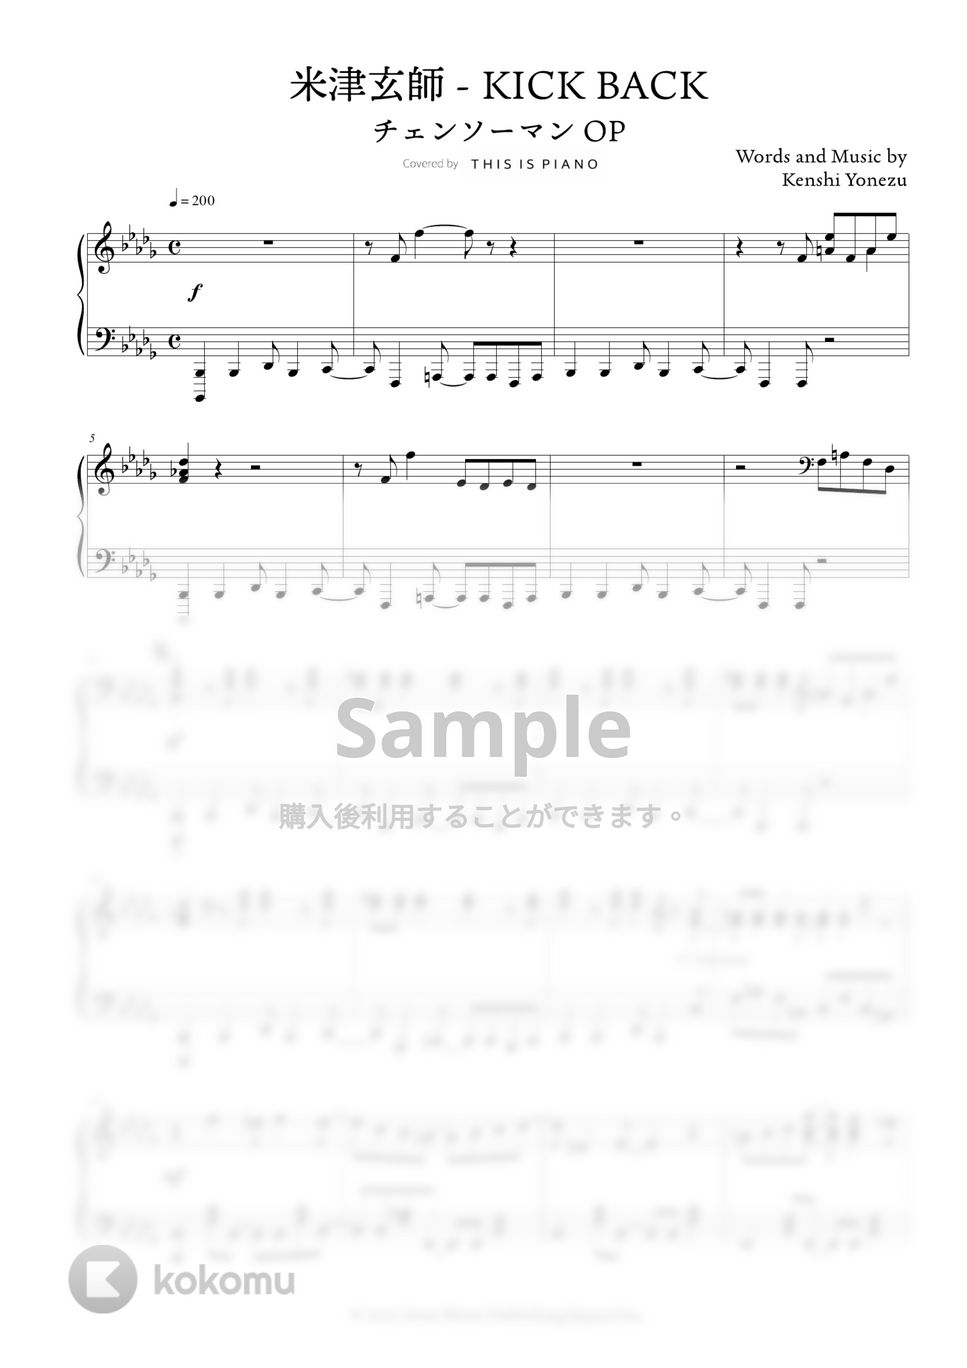 『チェンソーマン』 OP - KICK BACK (米津玄師) by THIS IS PIANO